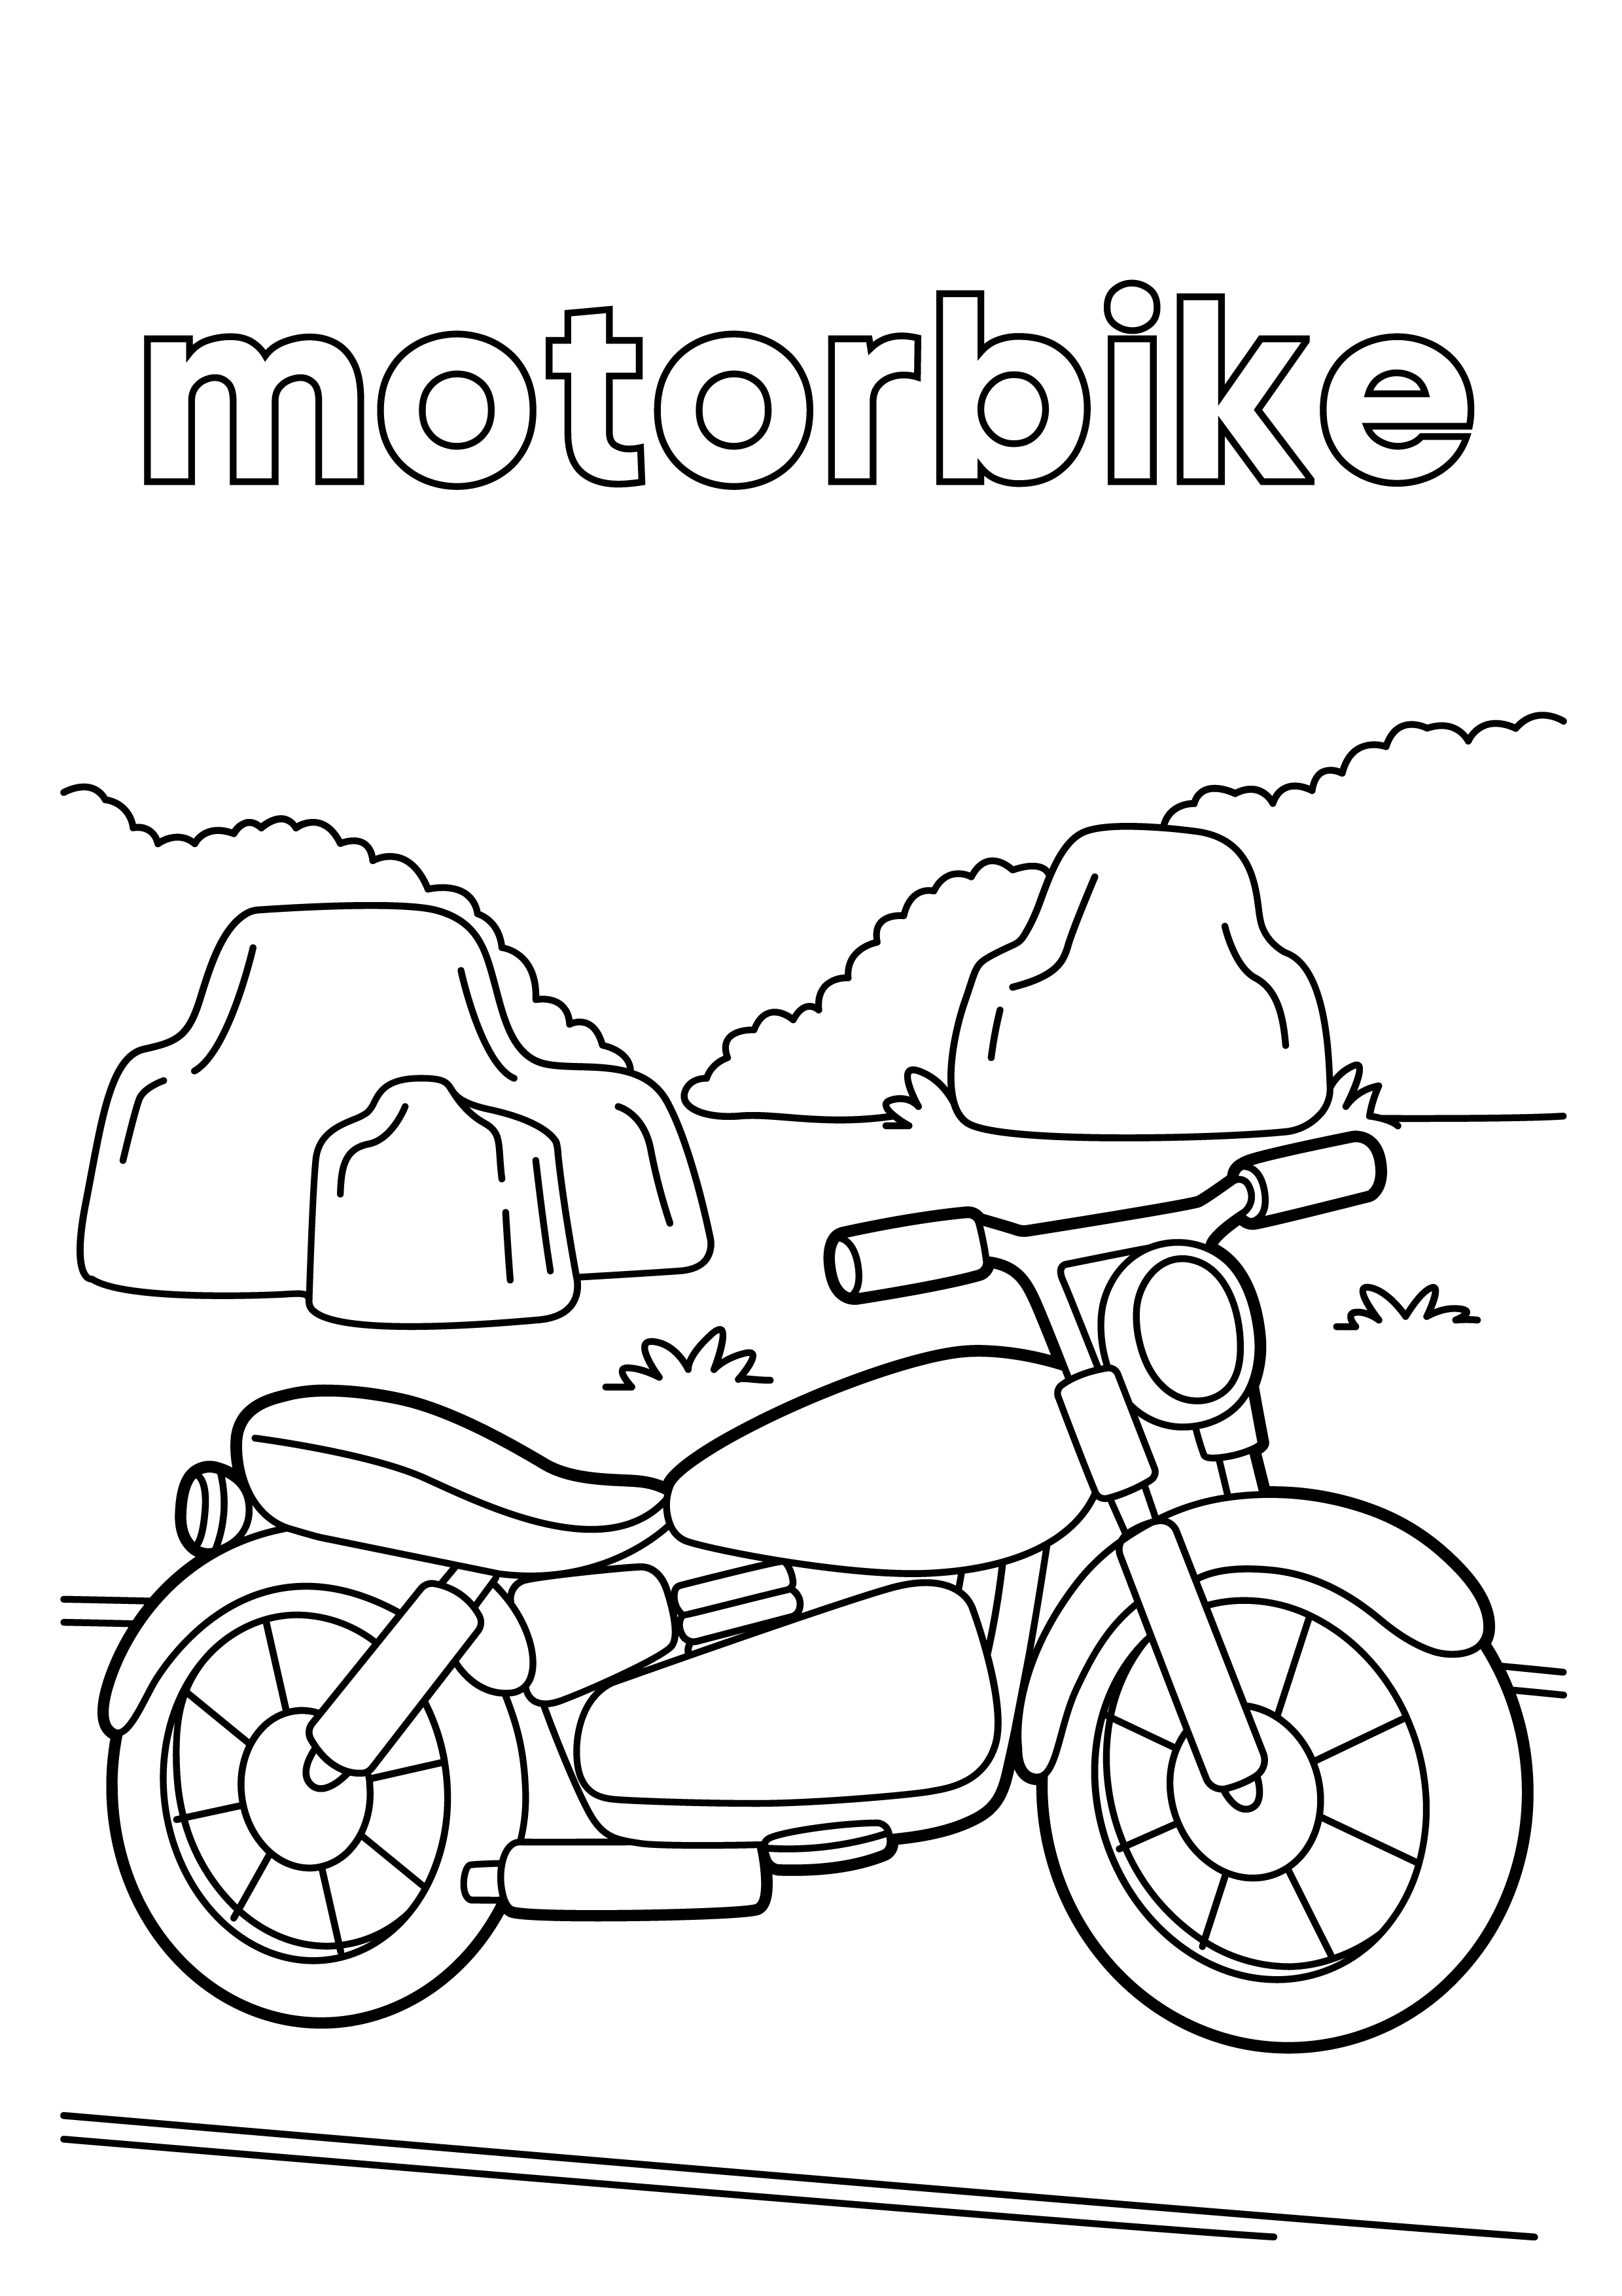 Раскраска мотоцикл «Огонек» формата А4 в высоком качестве